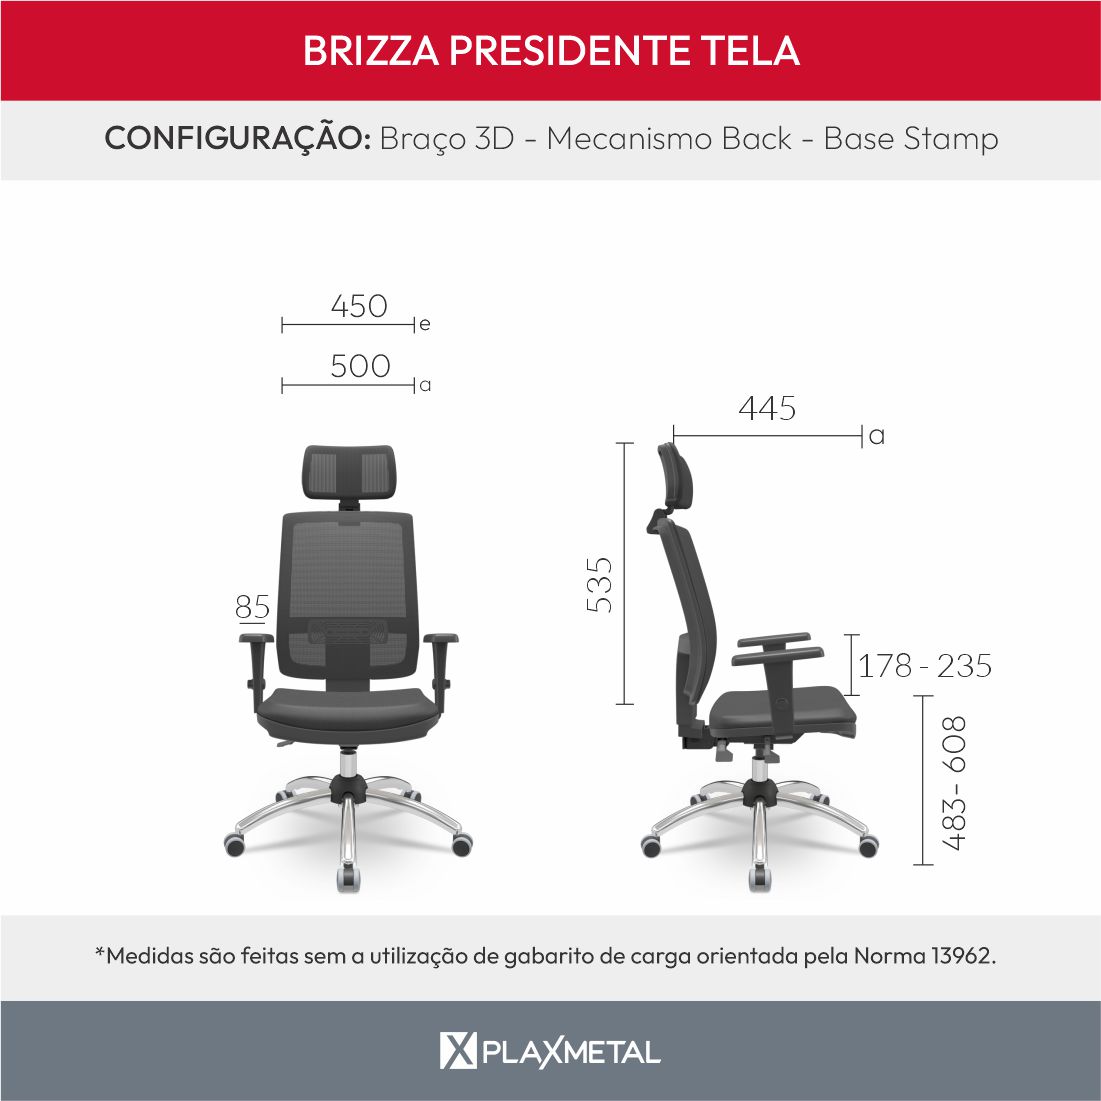 Dimensões Brizza Presidente Brizza Presidente Tela